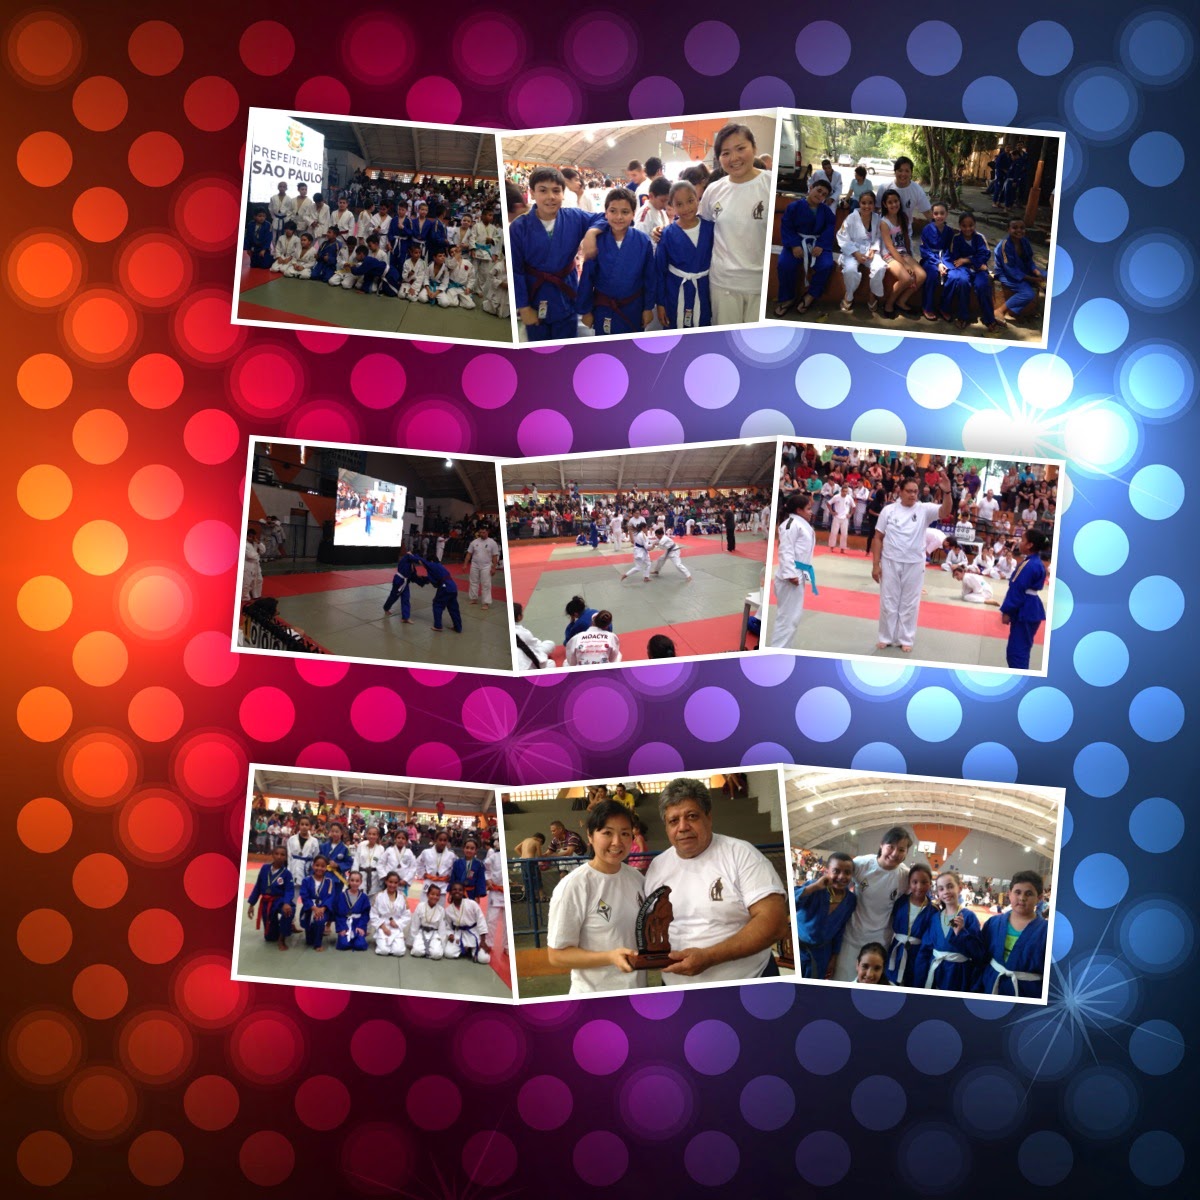 http://www.blogdoalvaresdeazevedo.blogspot.com.br/2014/10/campeonato-de-judo-2014.html